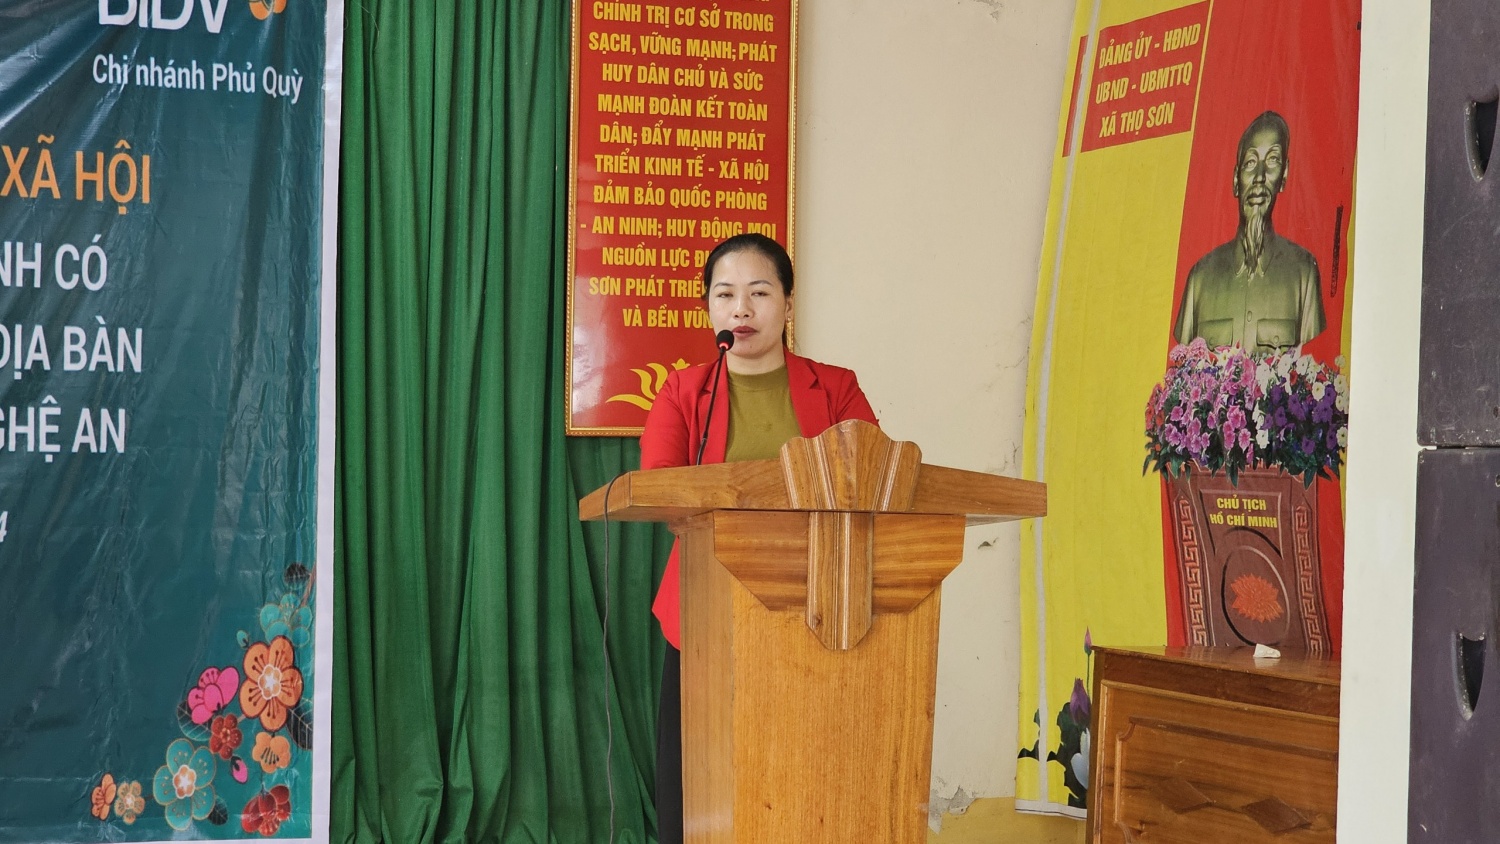 Tạp chí Năng lượng Mới phối hợp cùng BIDV tặng 200 suất quà cho người dân huyện Anh Sơn (Nghệ An)